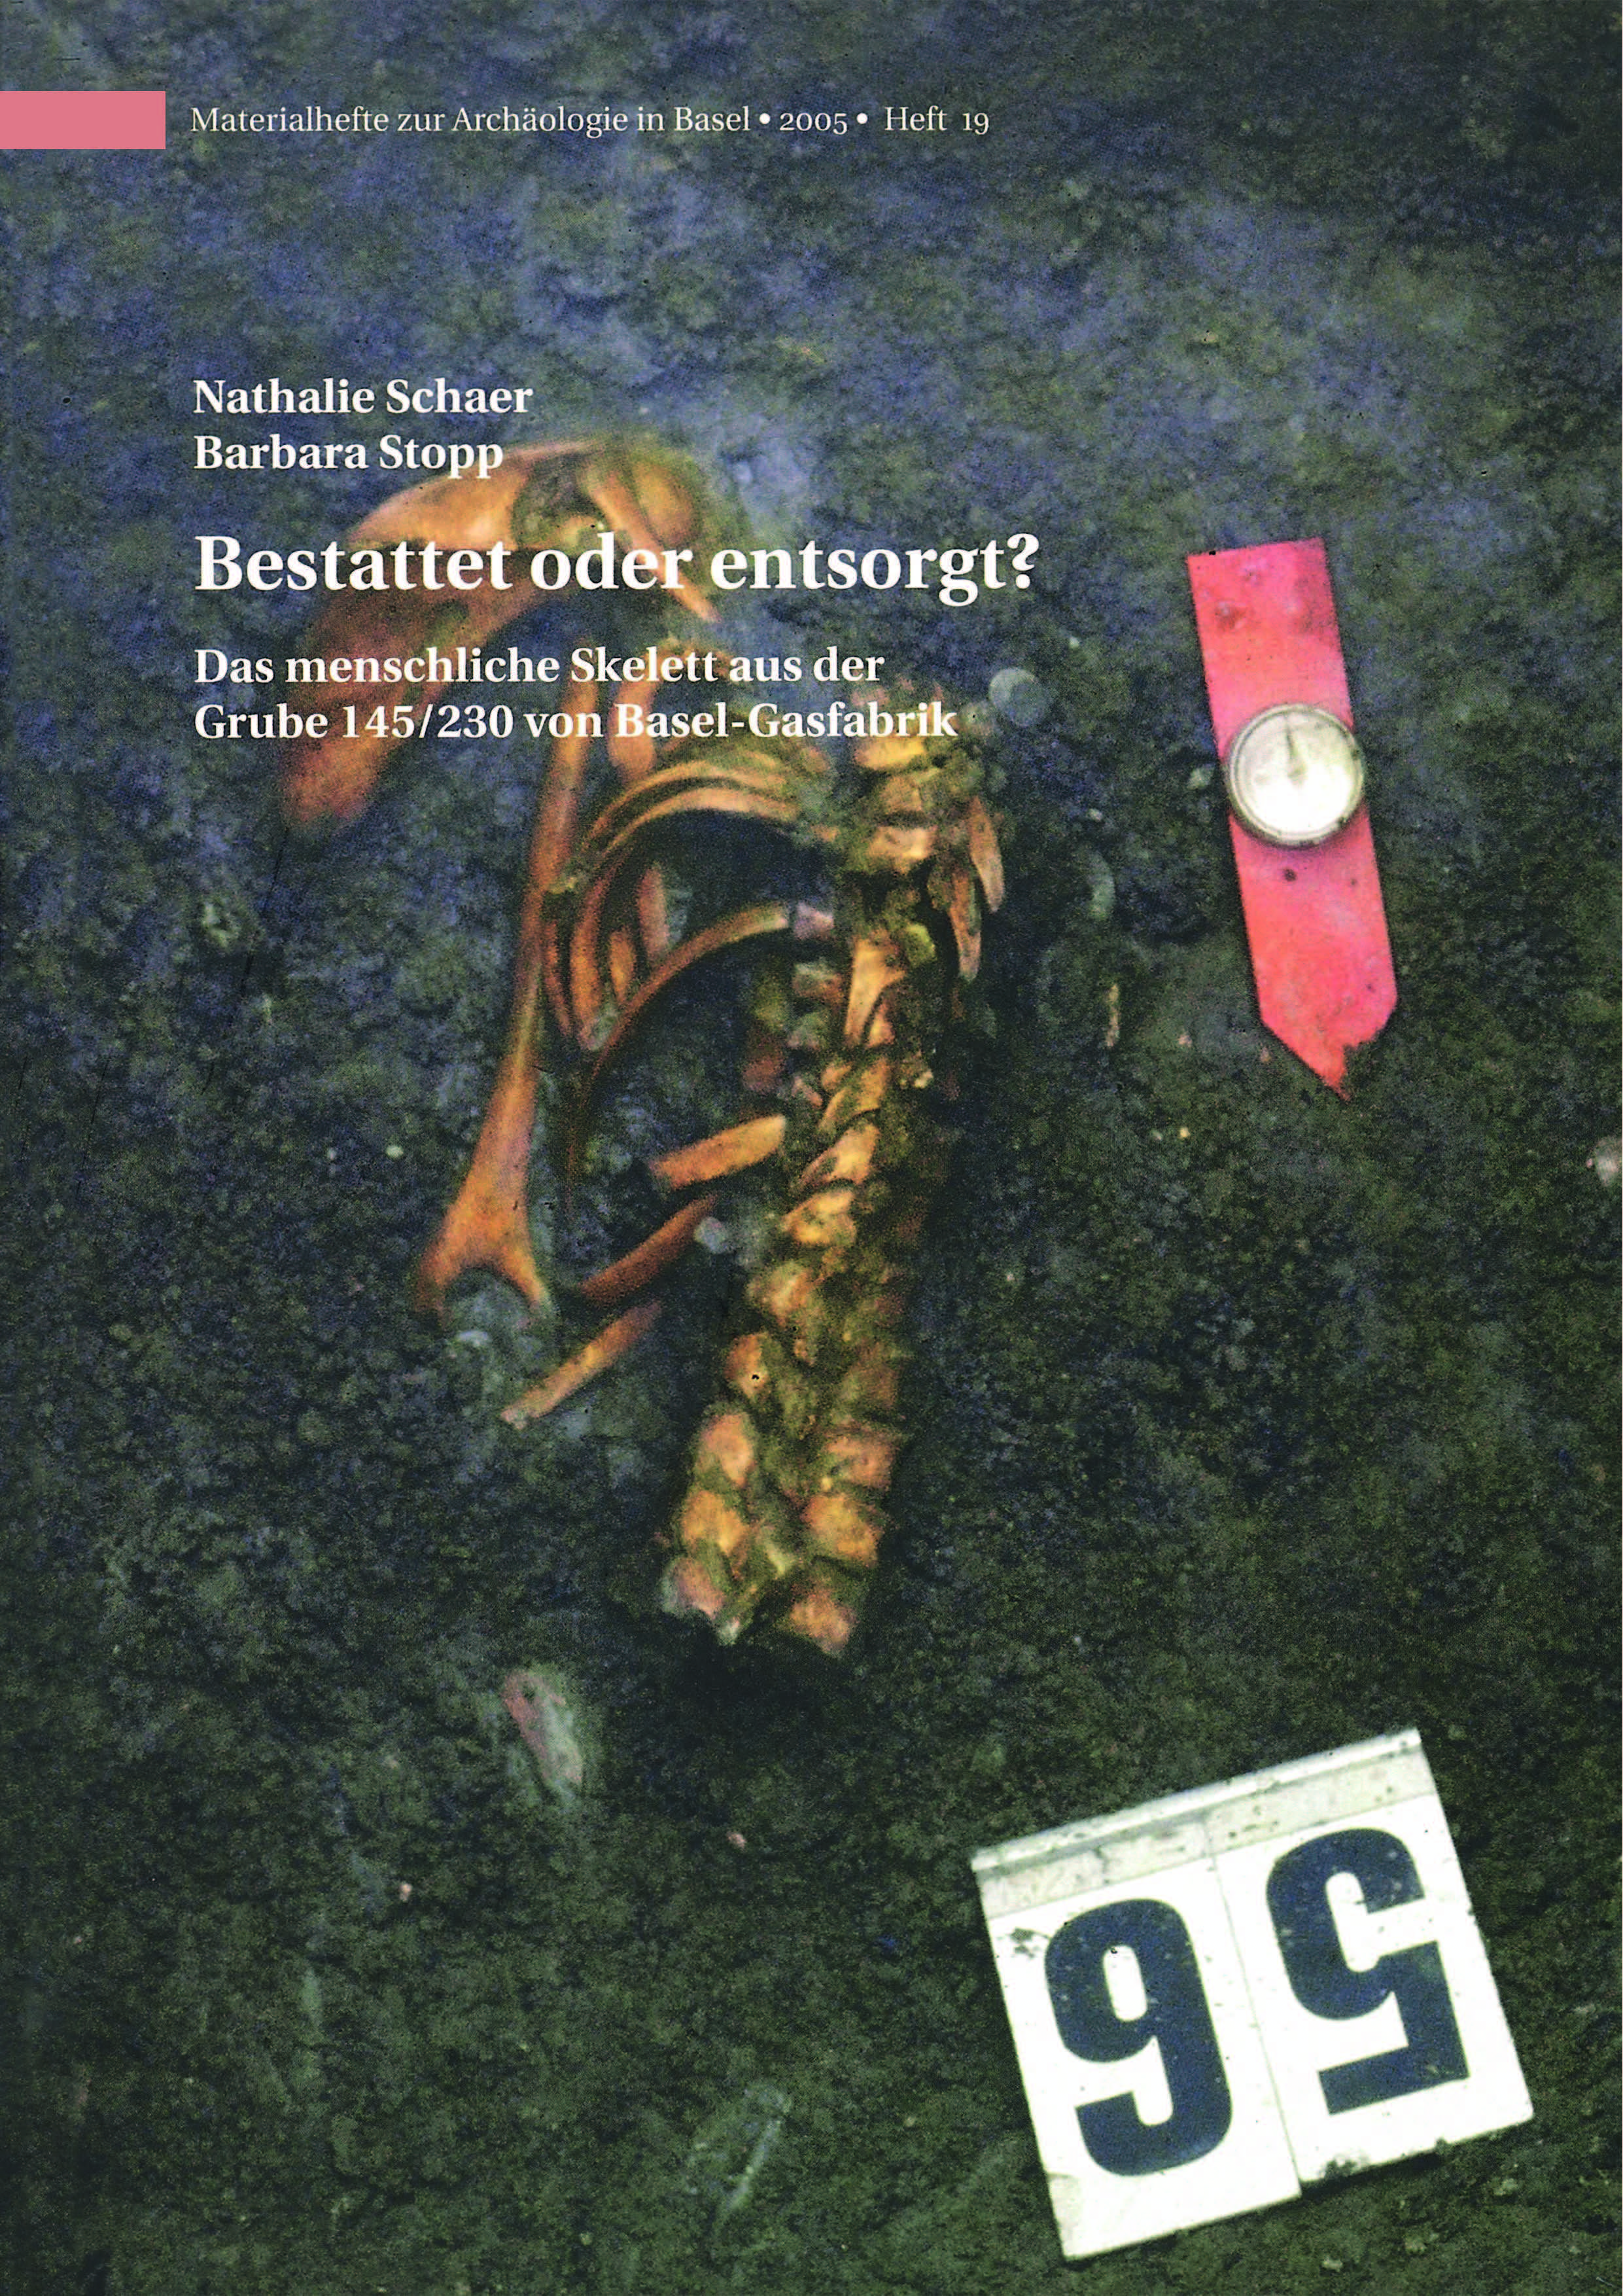 Cover des Materialhefts 19